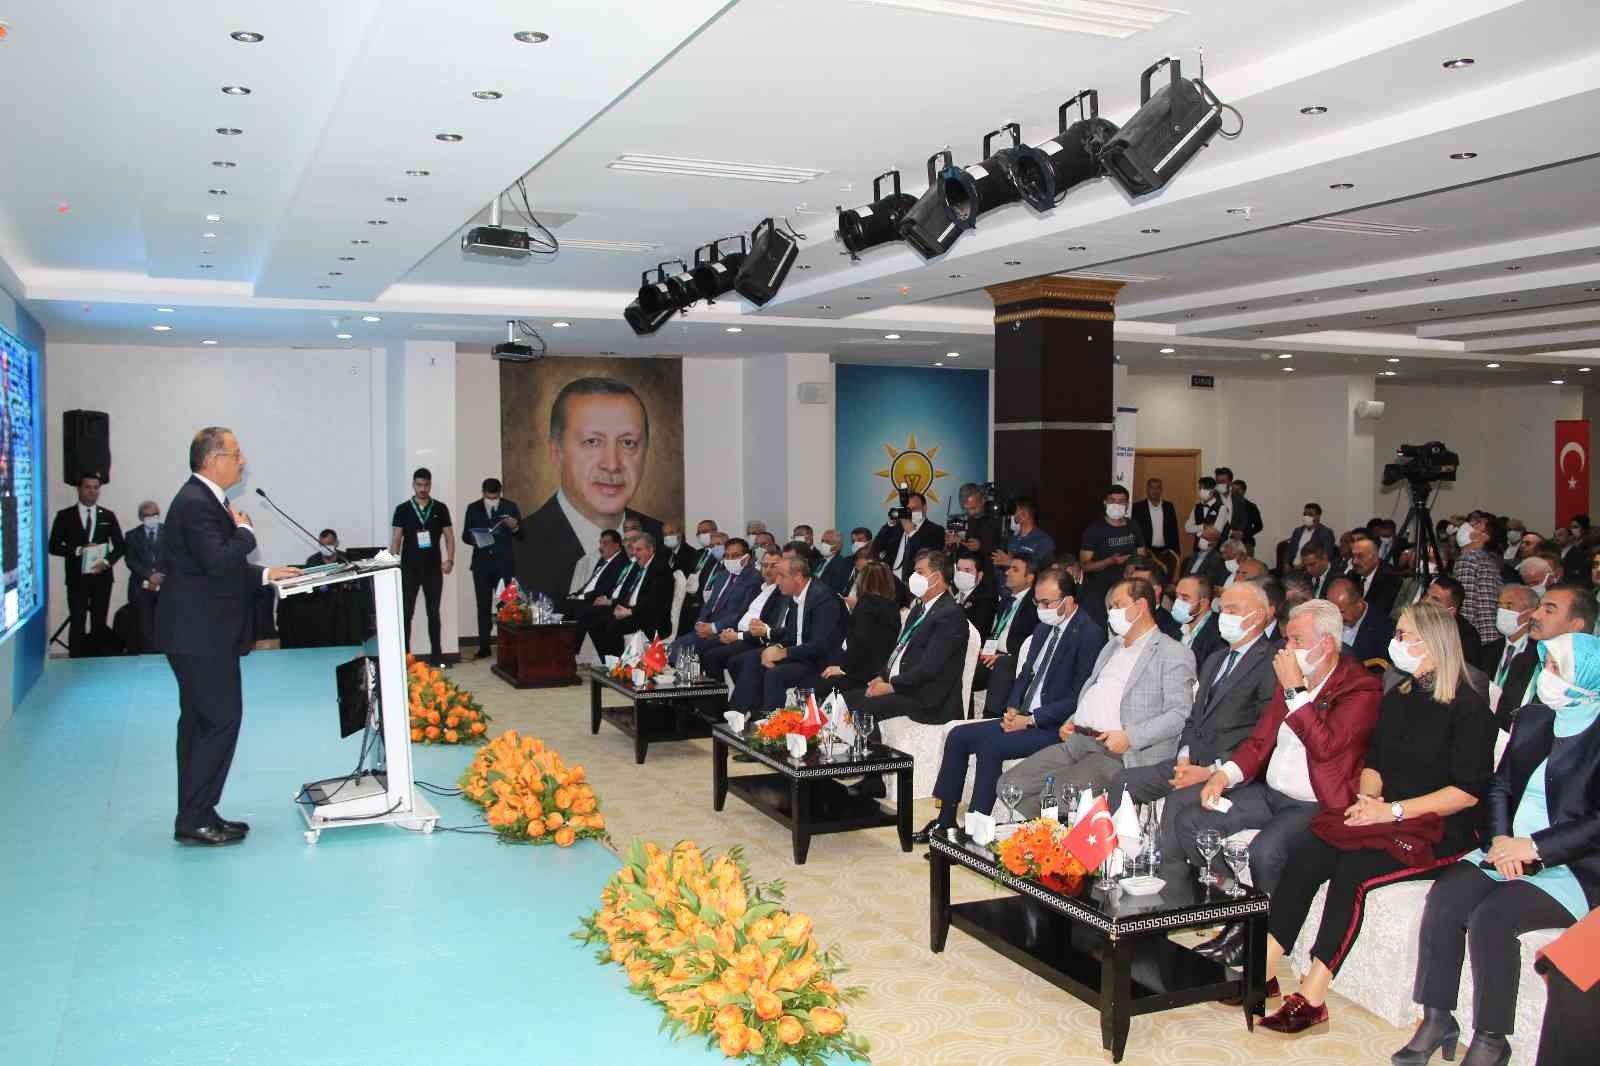 AK Parti Yerel Yönetimler Bölge Toplantısı Şırnak’ta başladı